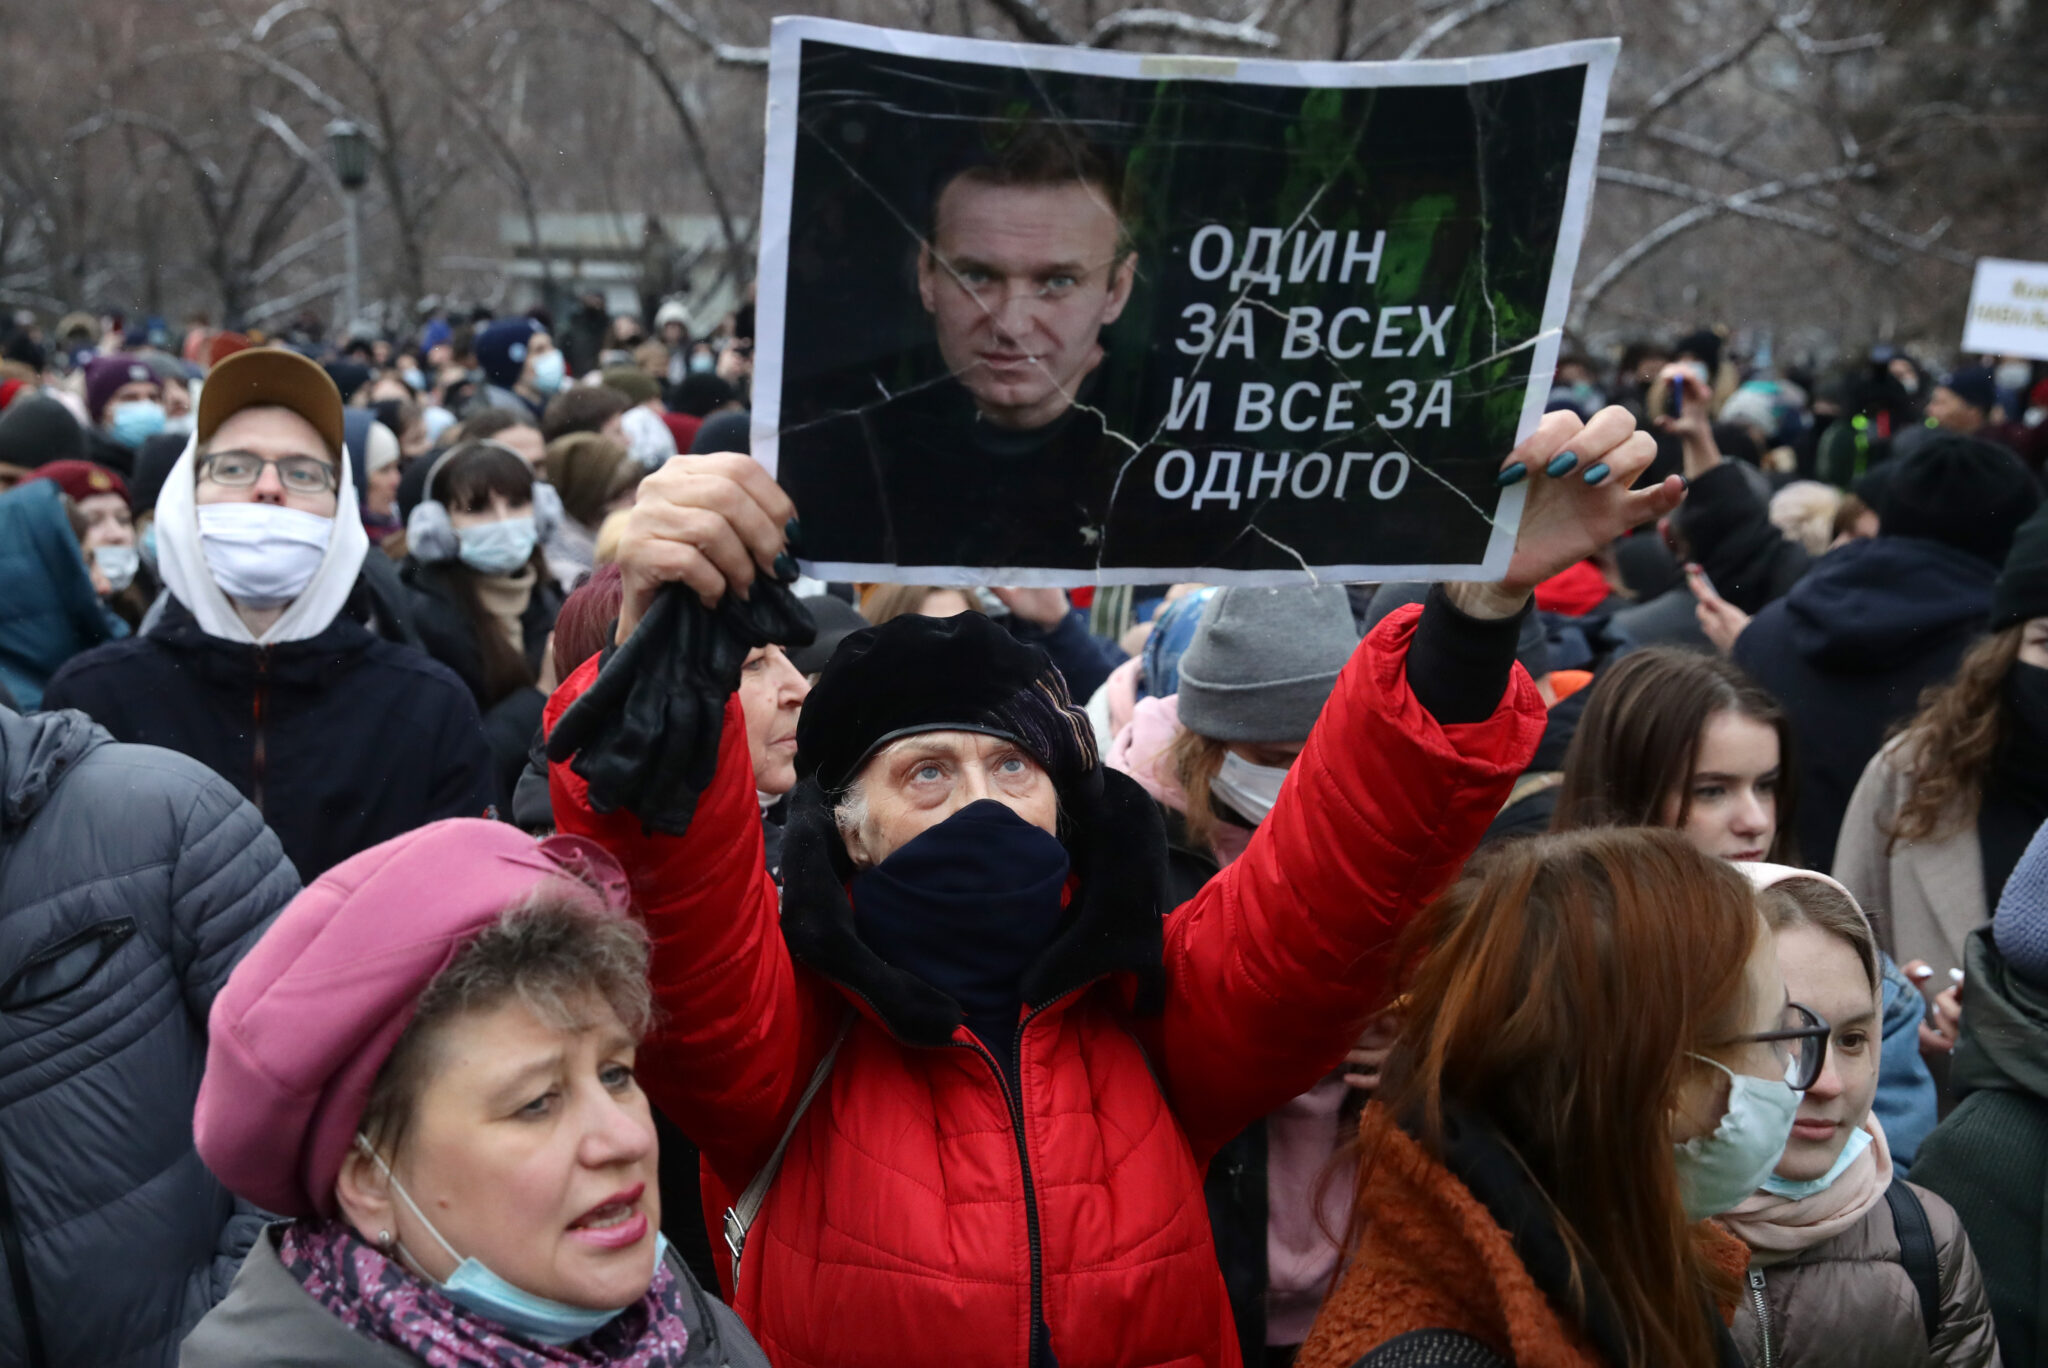 Акция в поддержку Навального в Новосибирске. Фото  Kirill Kukhmar/TASS/ Scanpix/Leta